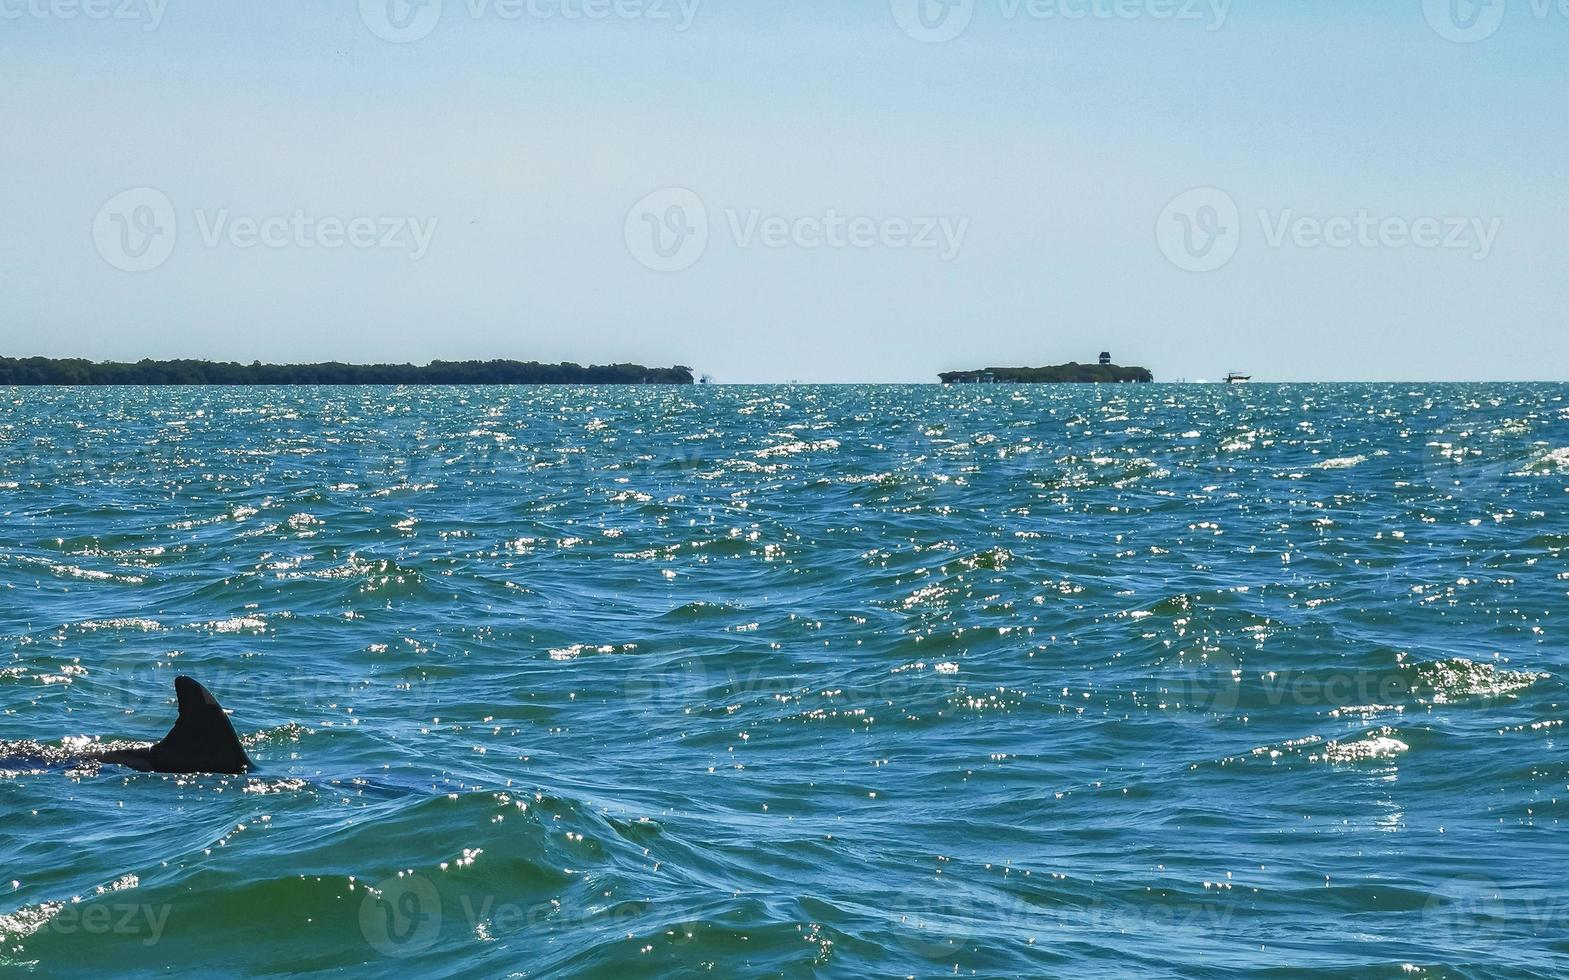 dauphins nageant dans l'eau au large de l'île de holbox au mexique. photo